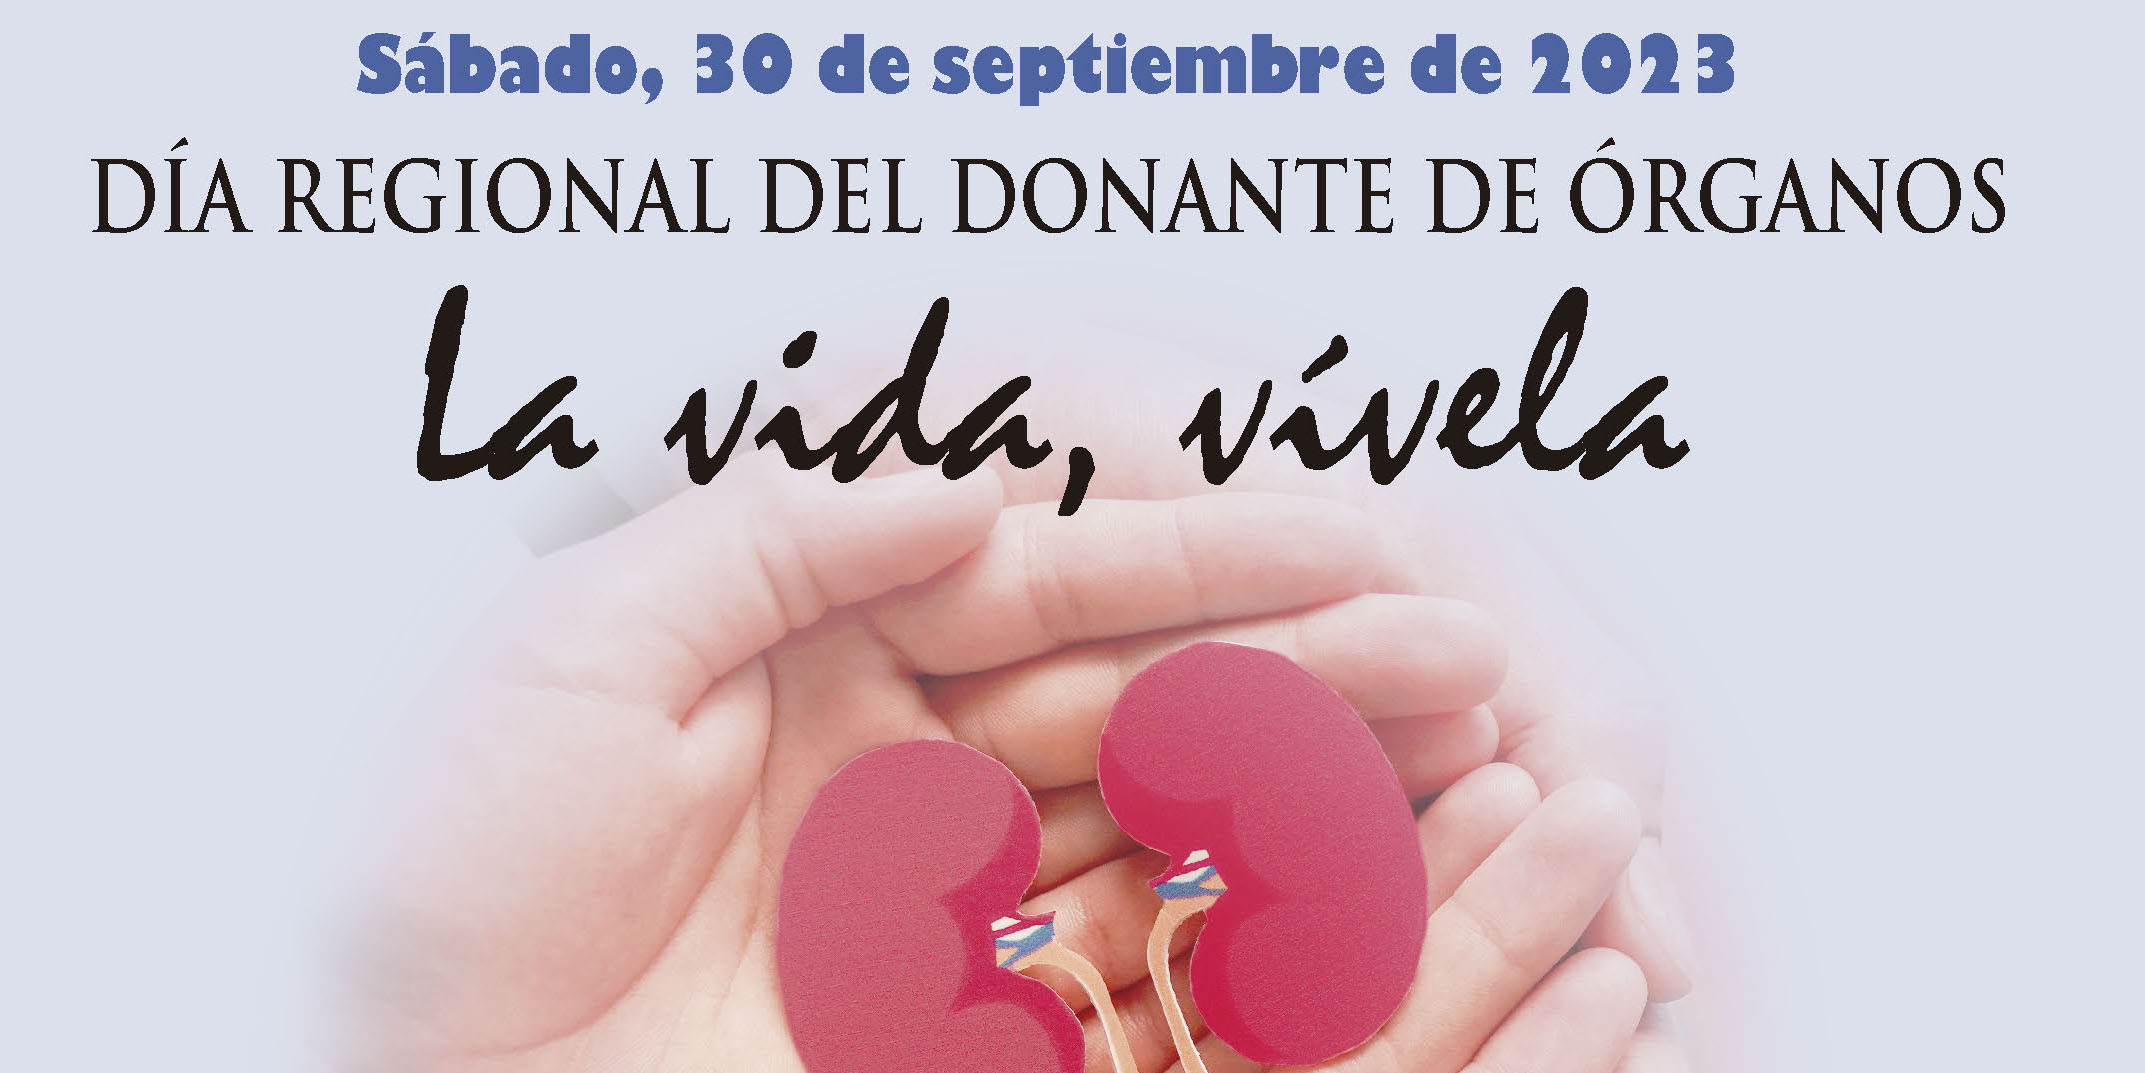 Celebramos el Día Regional del Donante de Órganos 2023